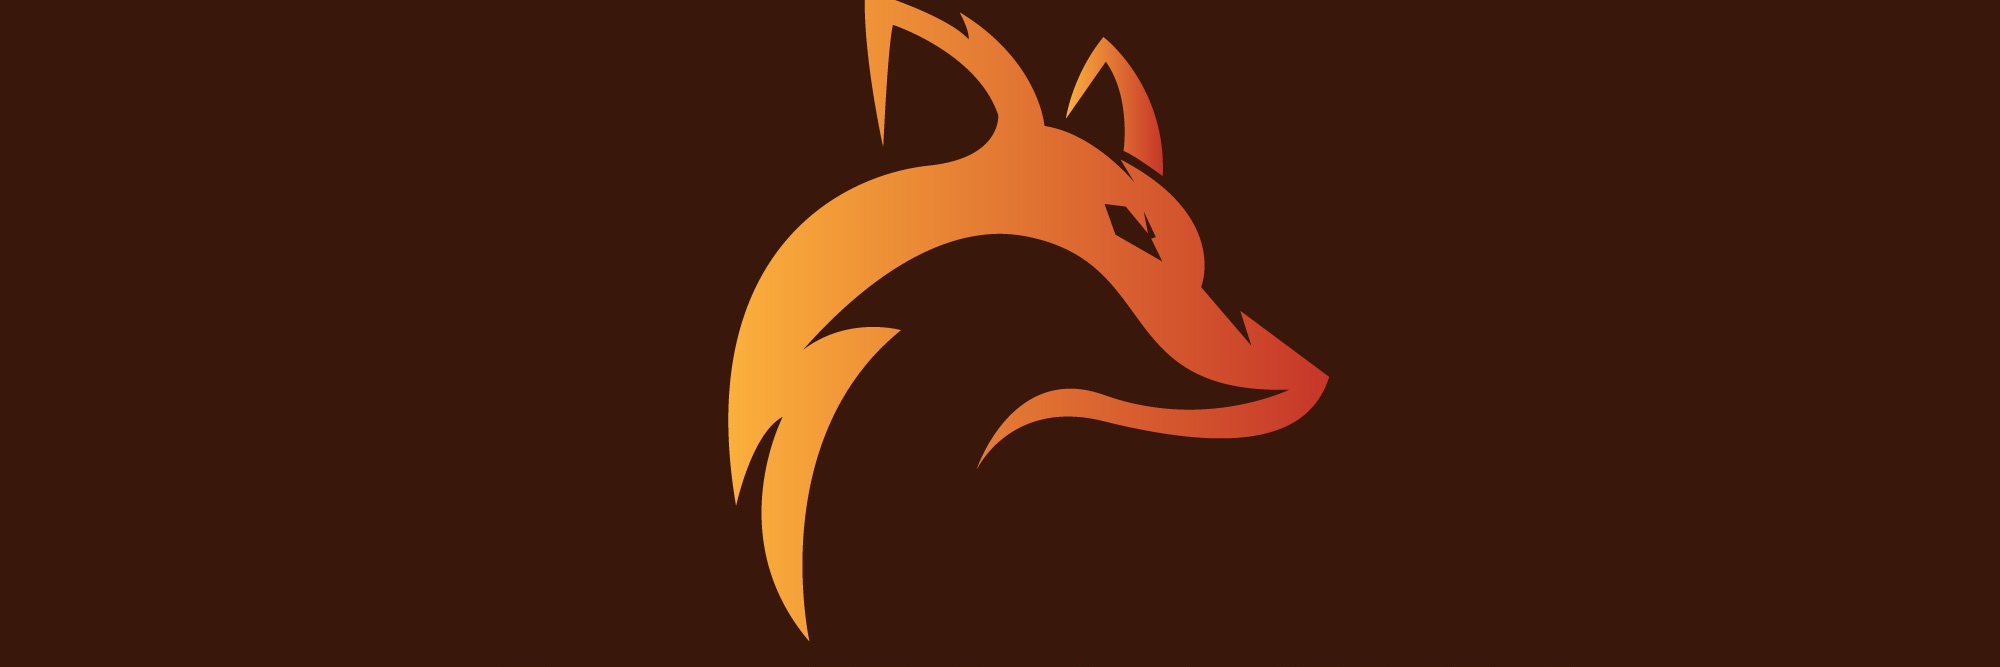 Fox Hound Appliance Industries Logo